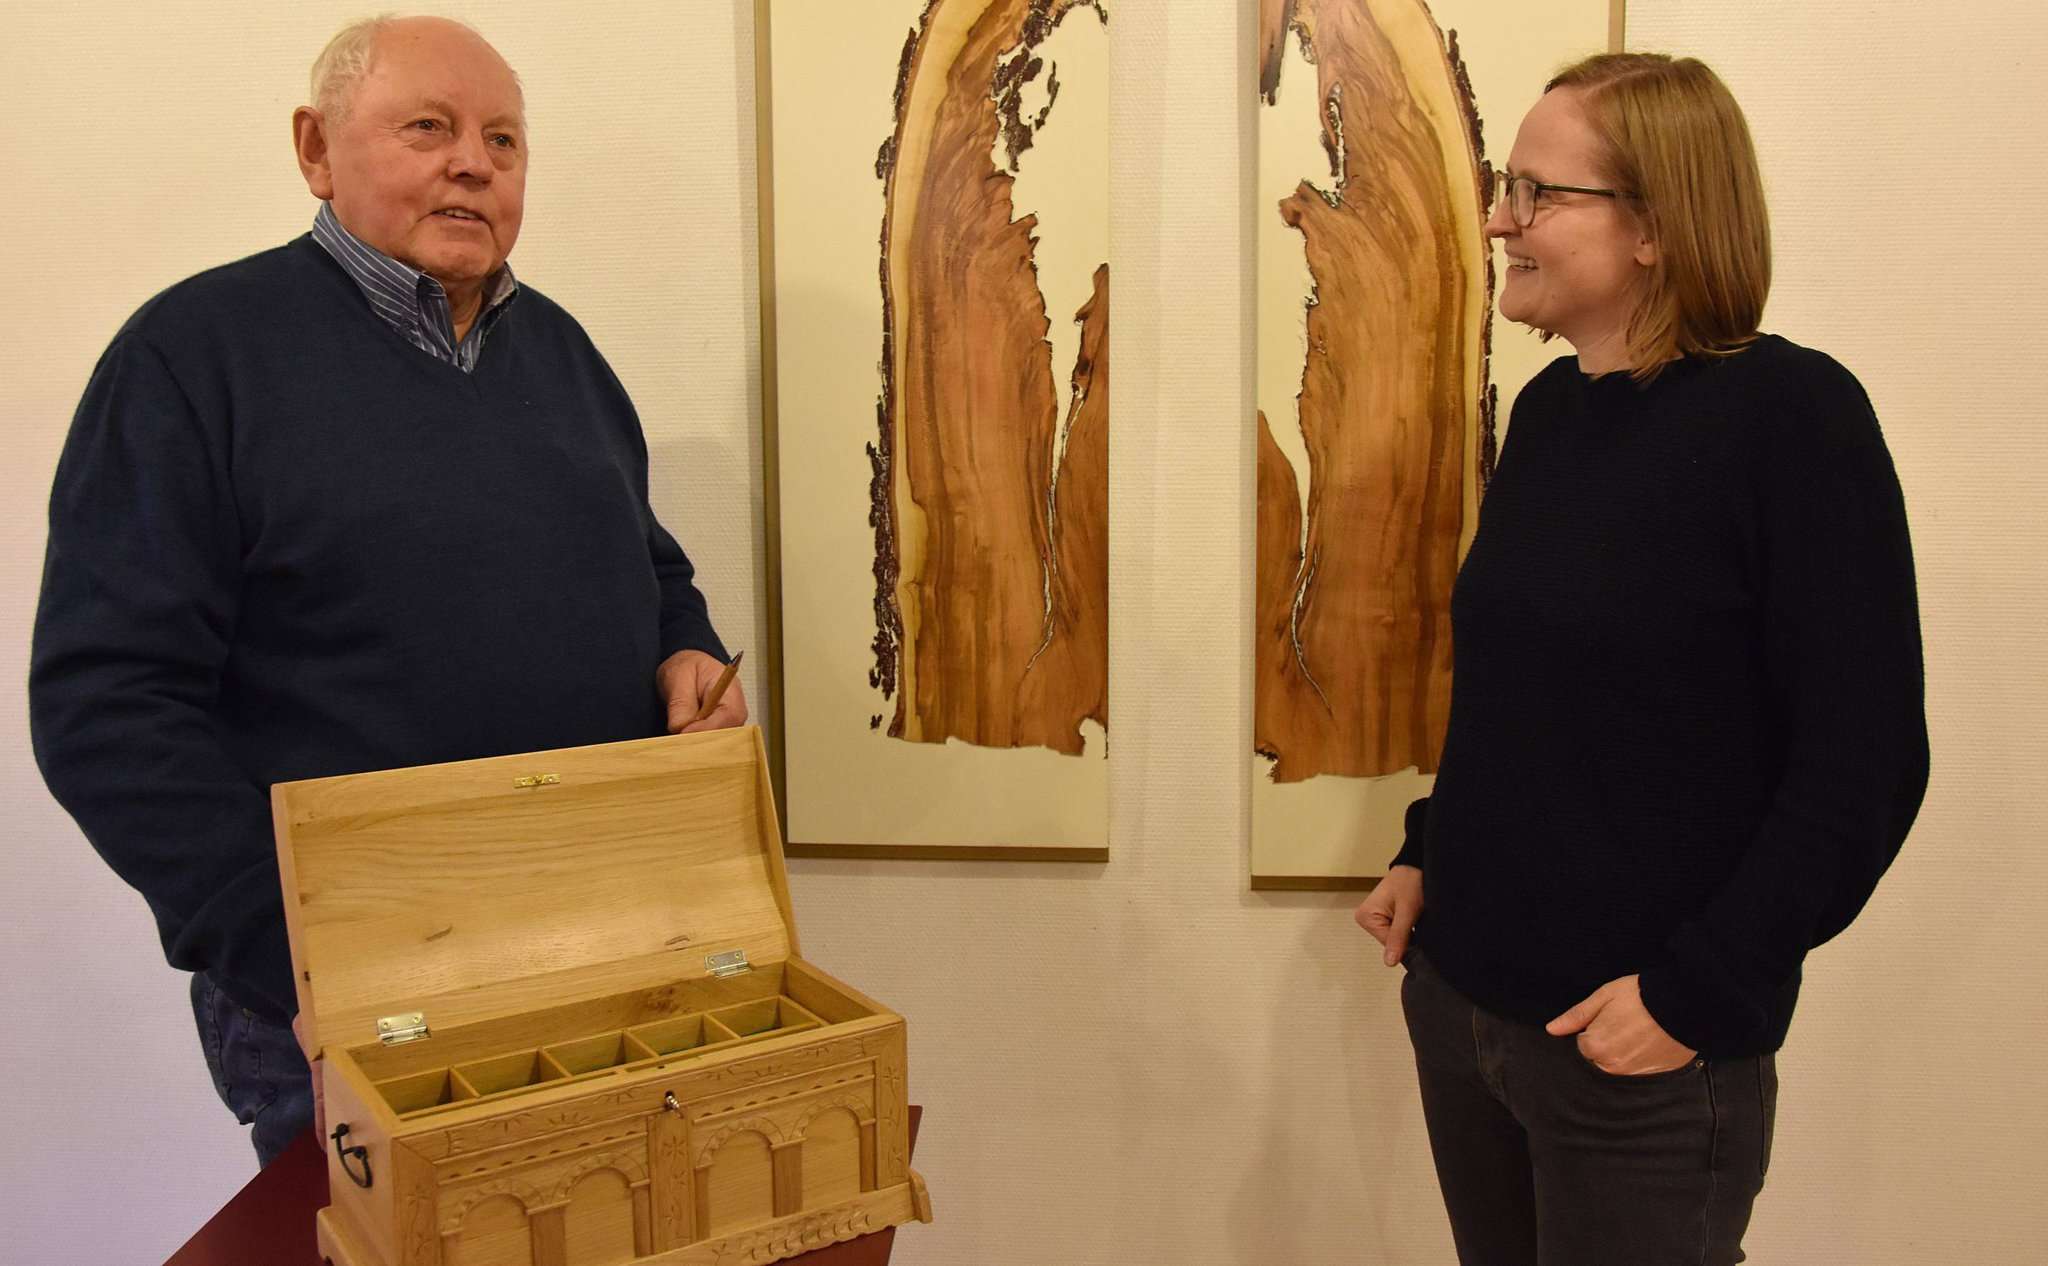 Museumsleiterin Kerstin Thölke ist beeindruckt, was Otto Köster aus Holz entstehen lässt. Foto: Heidrun Meyer